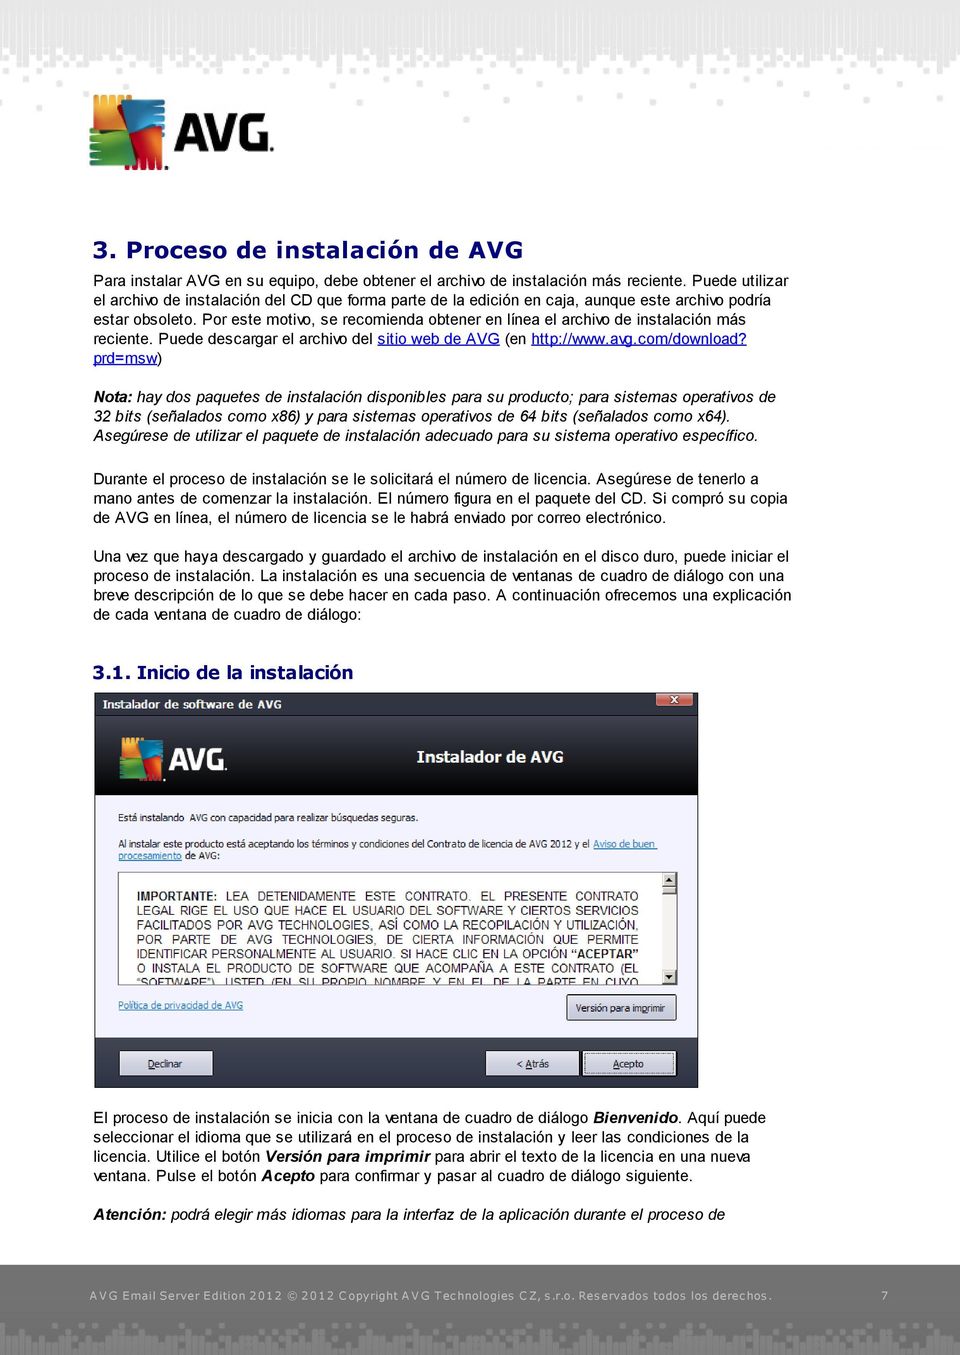 Por este motivo, se recomienda obtener en línea el archivo de instalación más reciente. Puede descargar el archivo del sitio web de AVG (en http://www.avg.com/download?